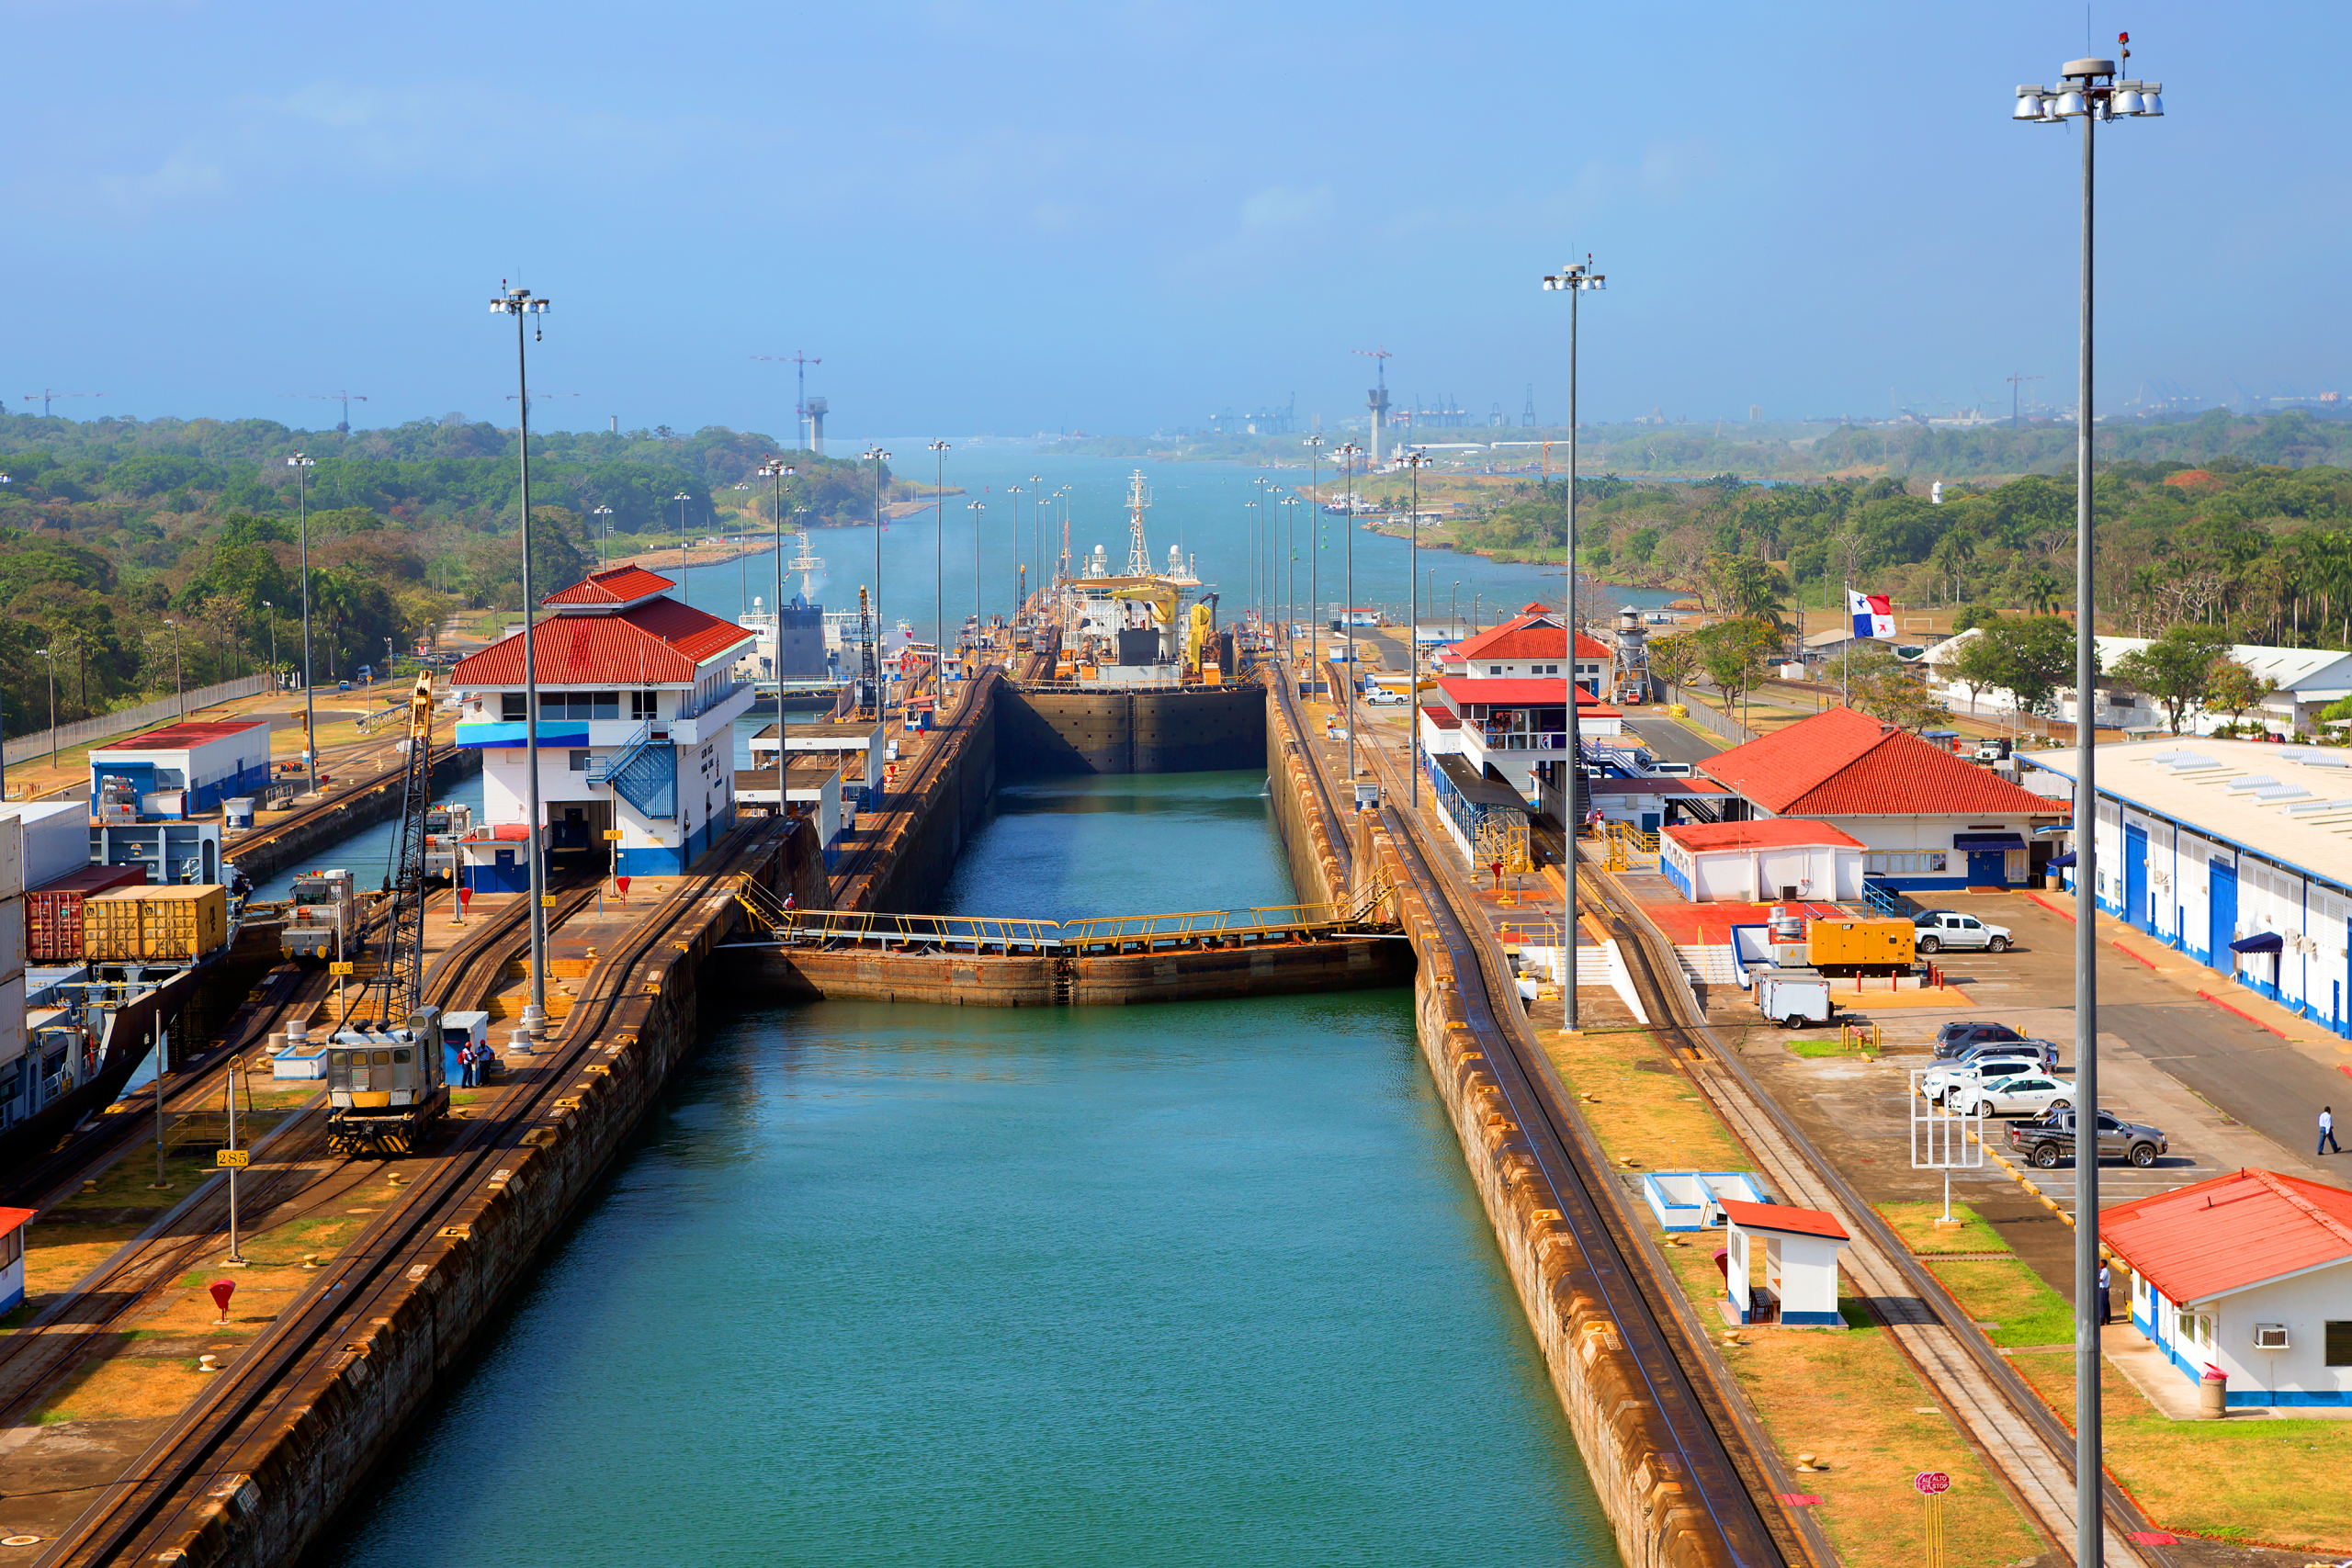 Panamski kanal pušta i neregistrovane brodove, posledice suše sve veće